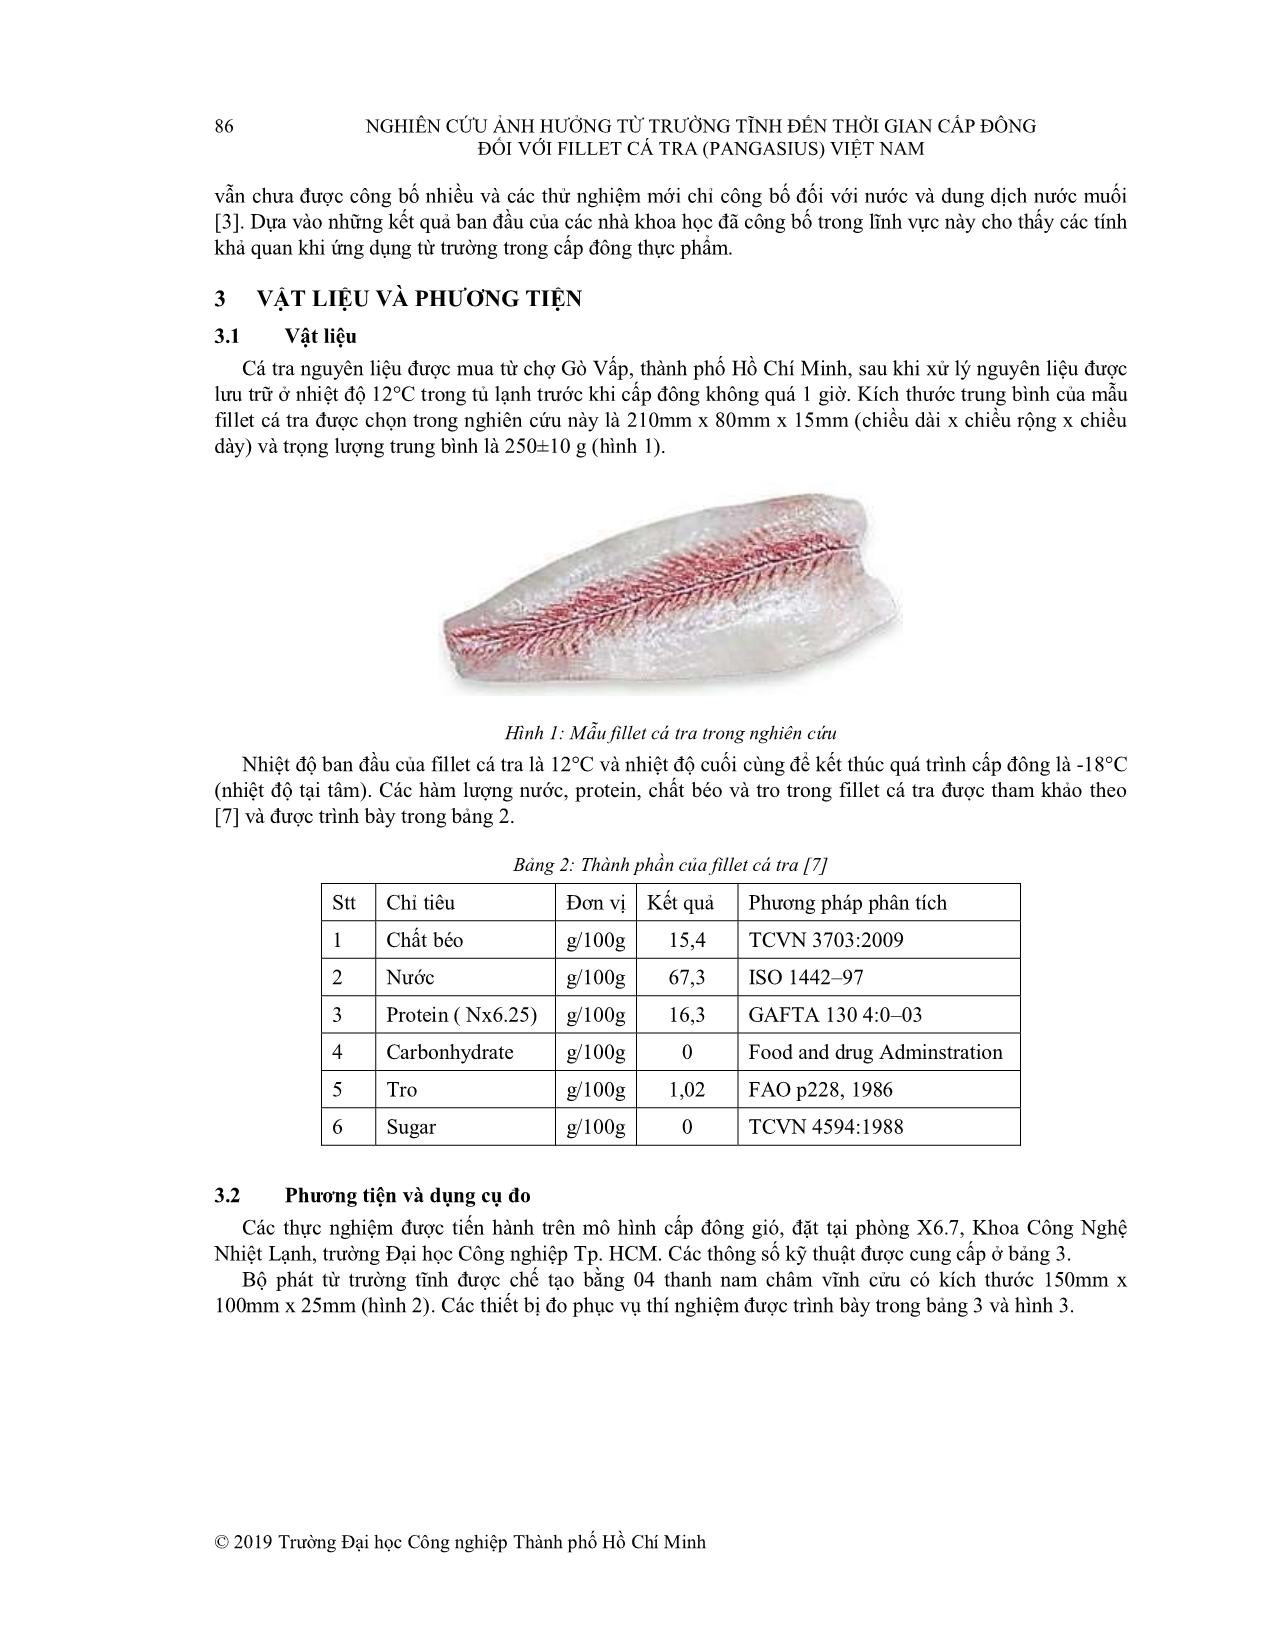 Nghiên cứu ảnh hưởng từ trường tĩnh đến thời gian cấp đông đối với Fillet cá tra (Pangasius) Việt Nam trang 4